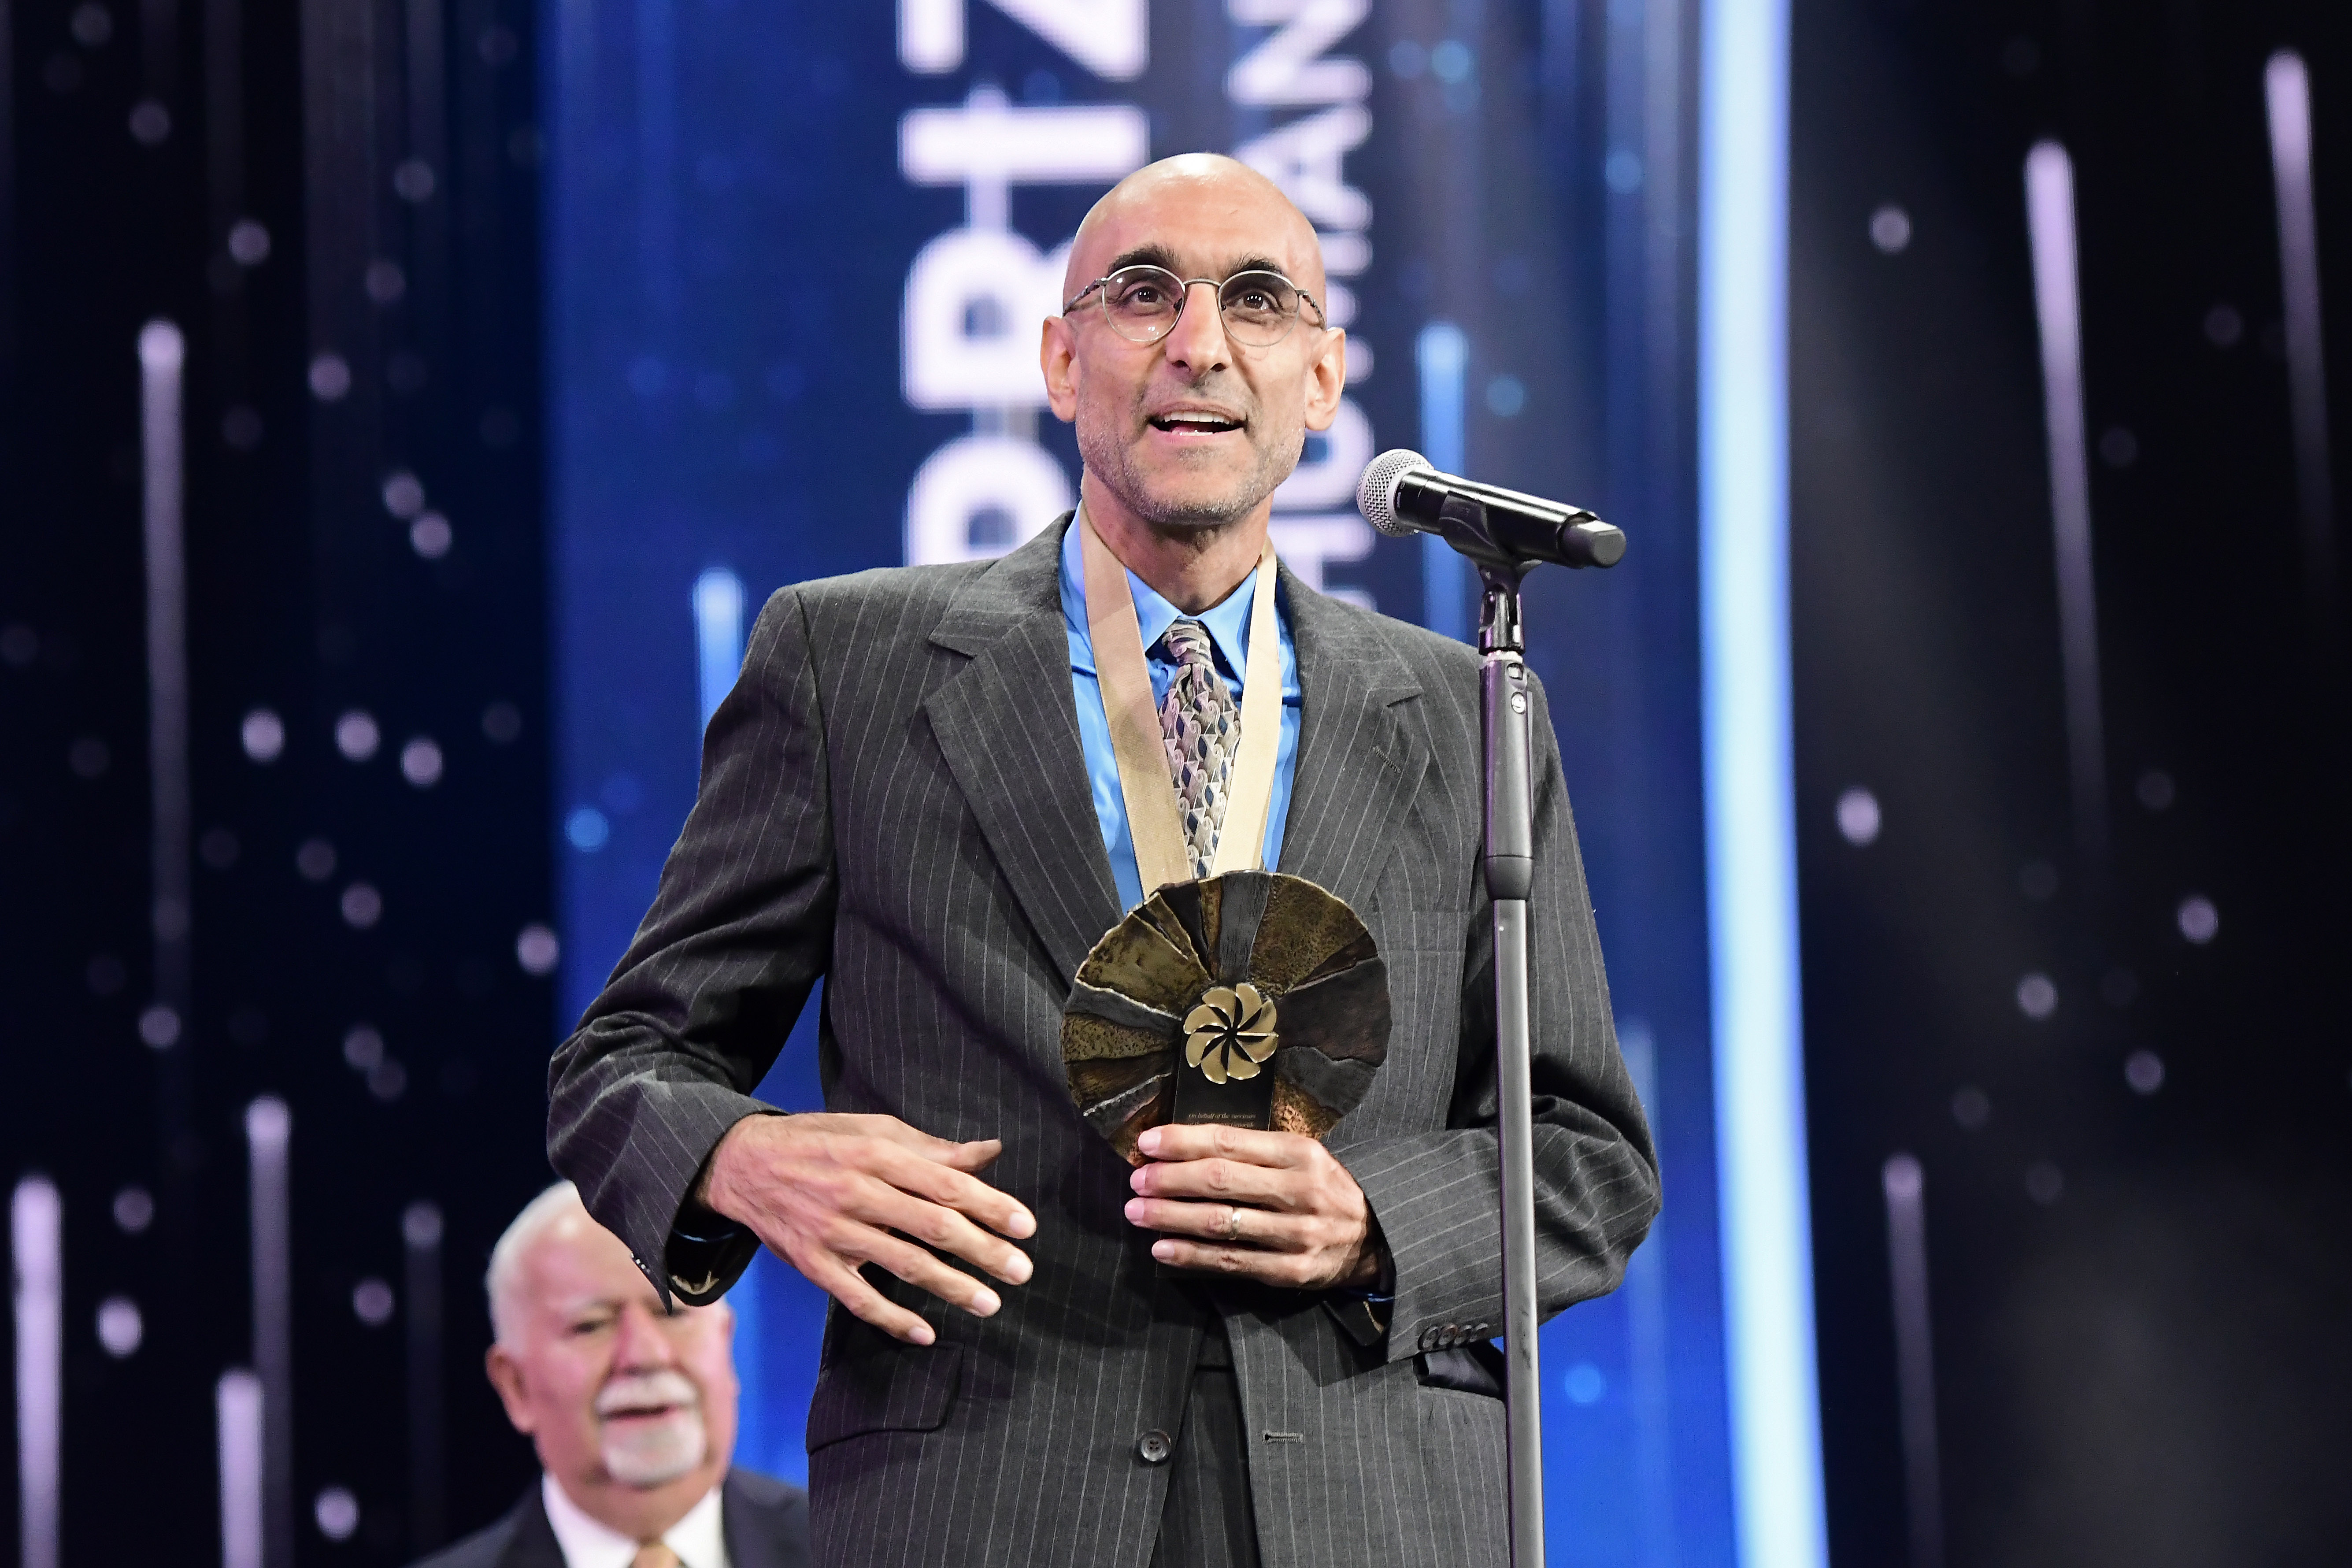 Le Prix Aurora de 1,1 million de Dollars pour Awakening Humanity a été remis au Dr Tom Catena